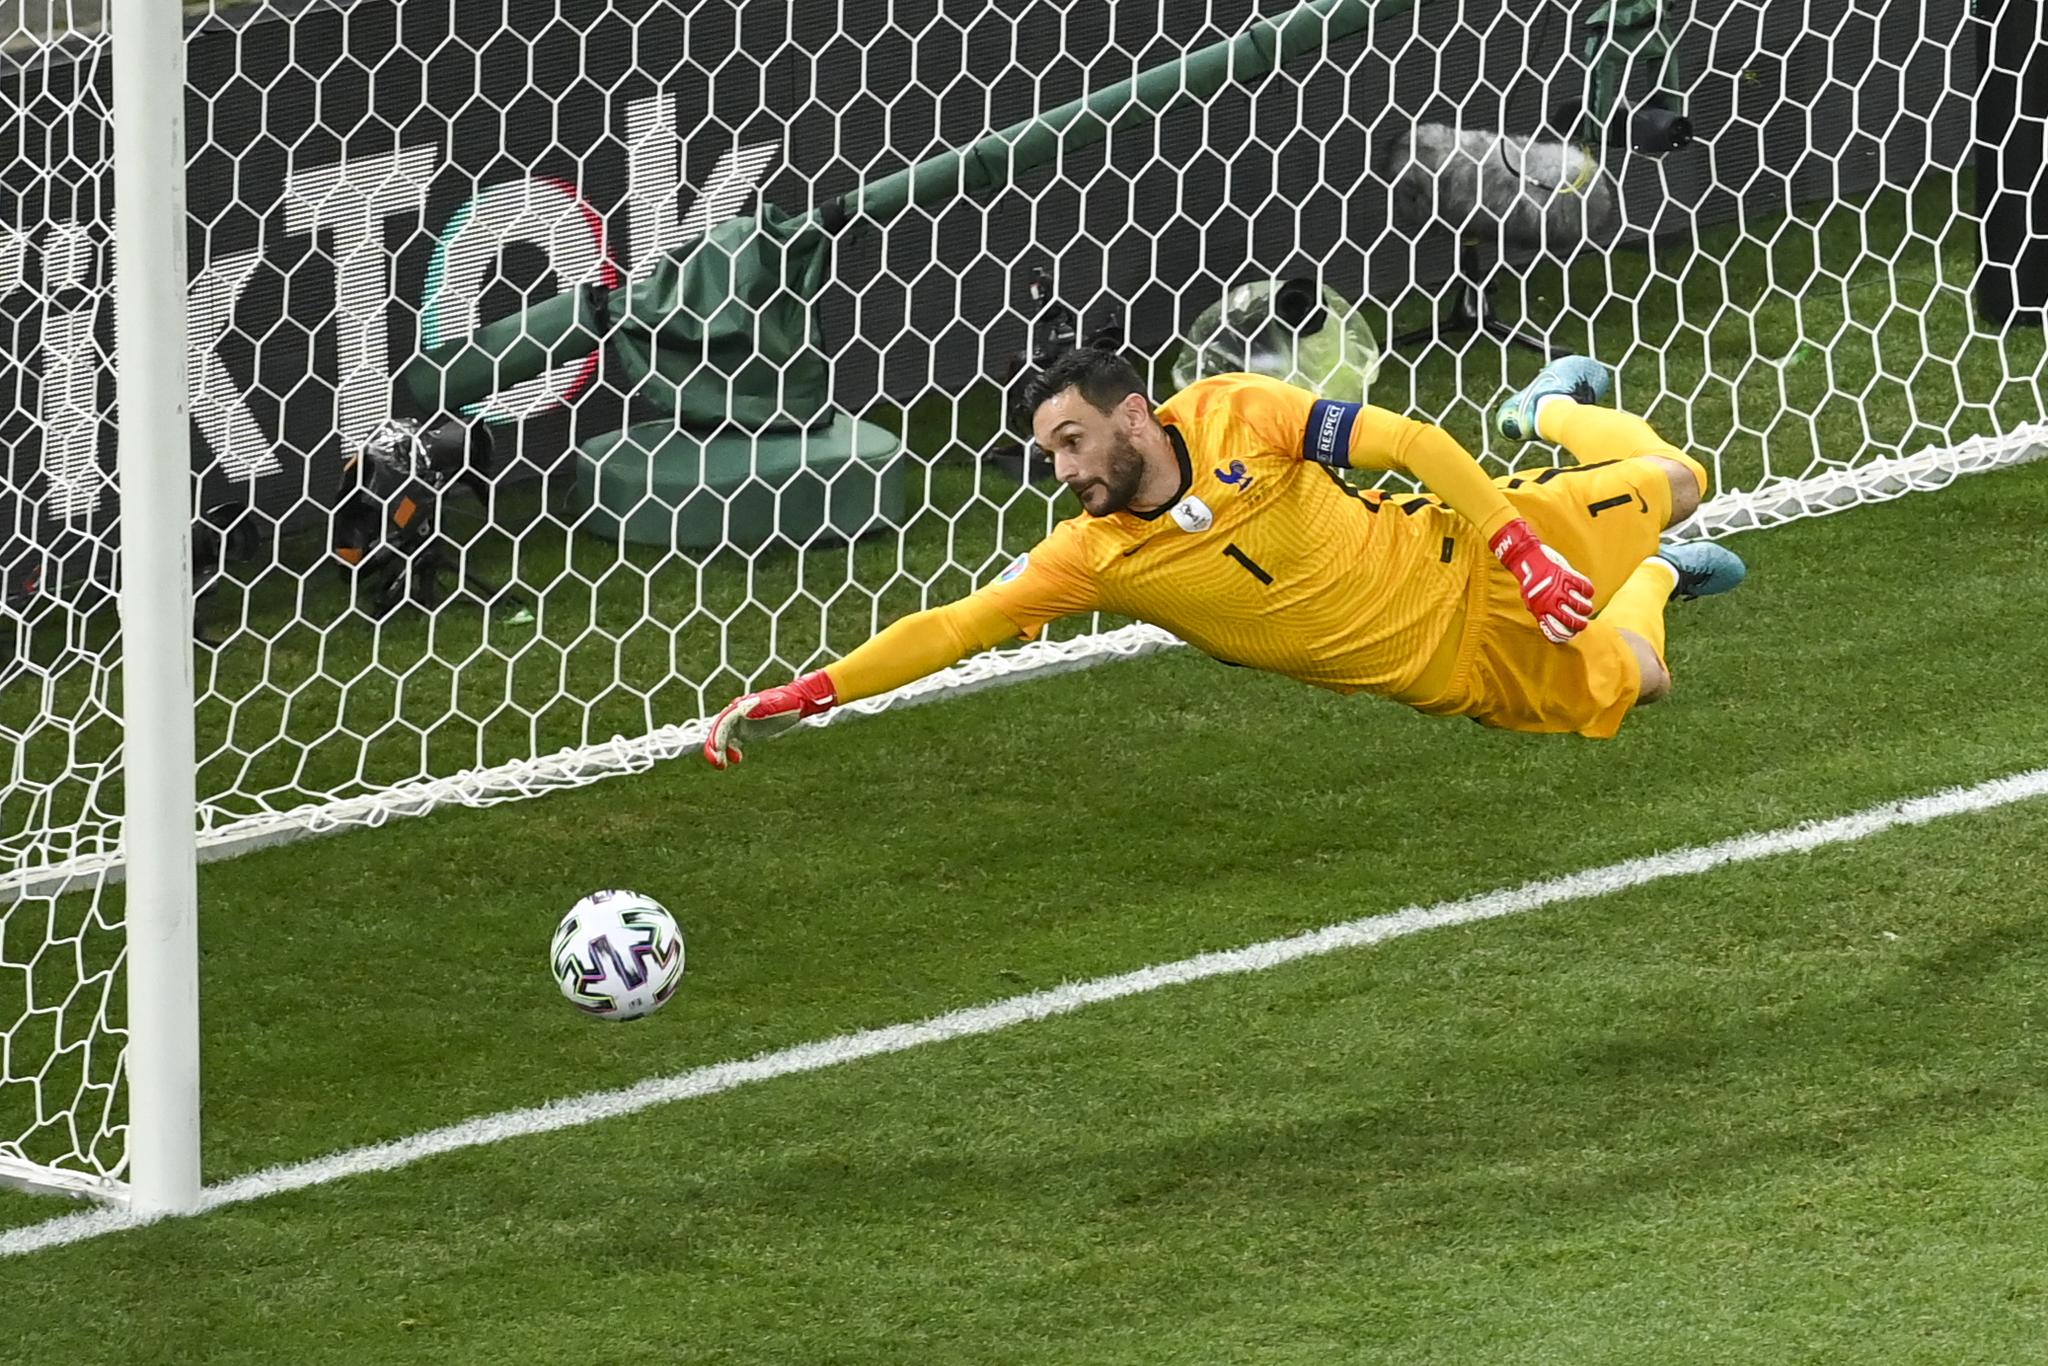 Frankrikes målvakt Hugo Lloris prøver forgjeves å rekke ballen i åttendedelsfinalen mot Sveits.